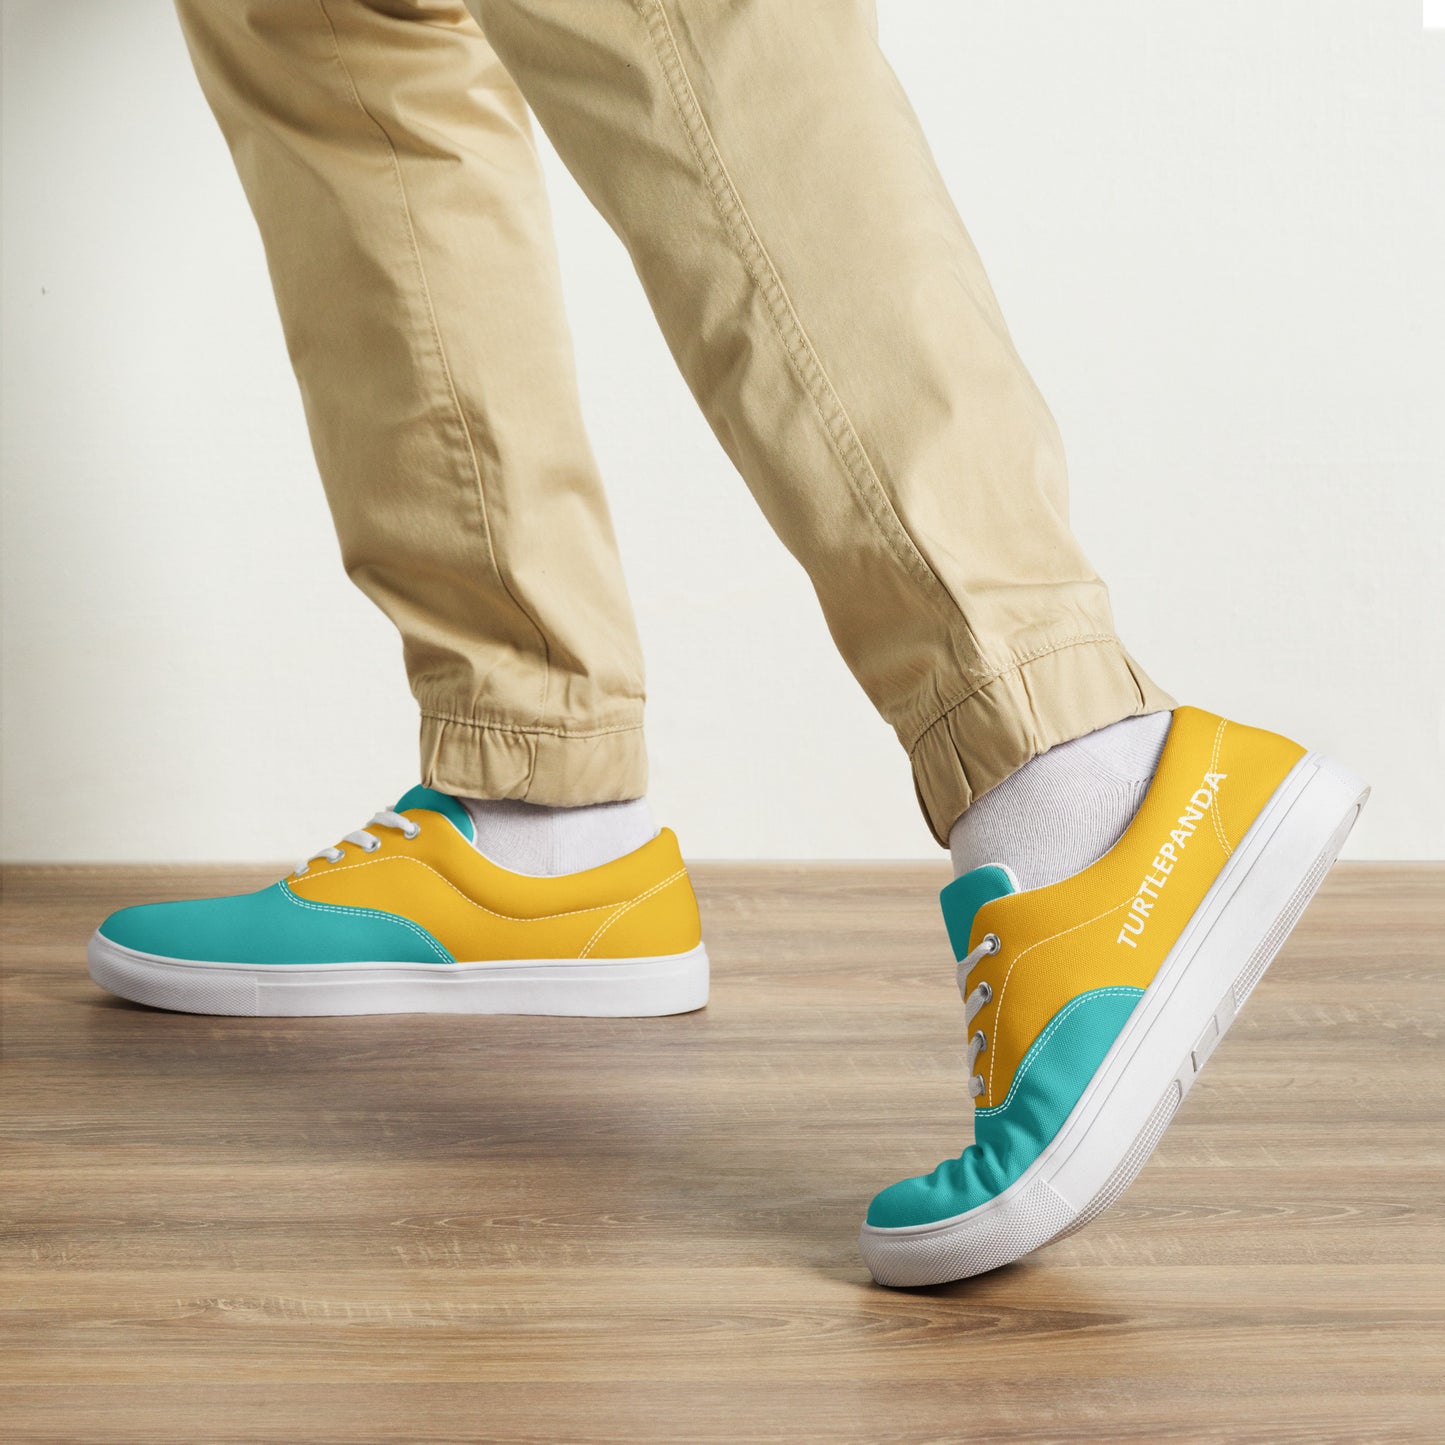 sneakers-mensneakers-yellow